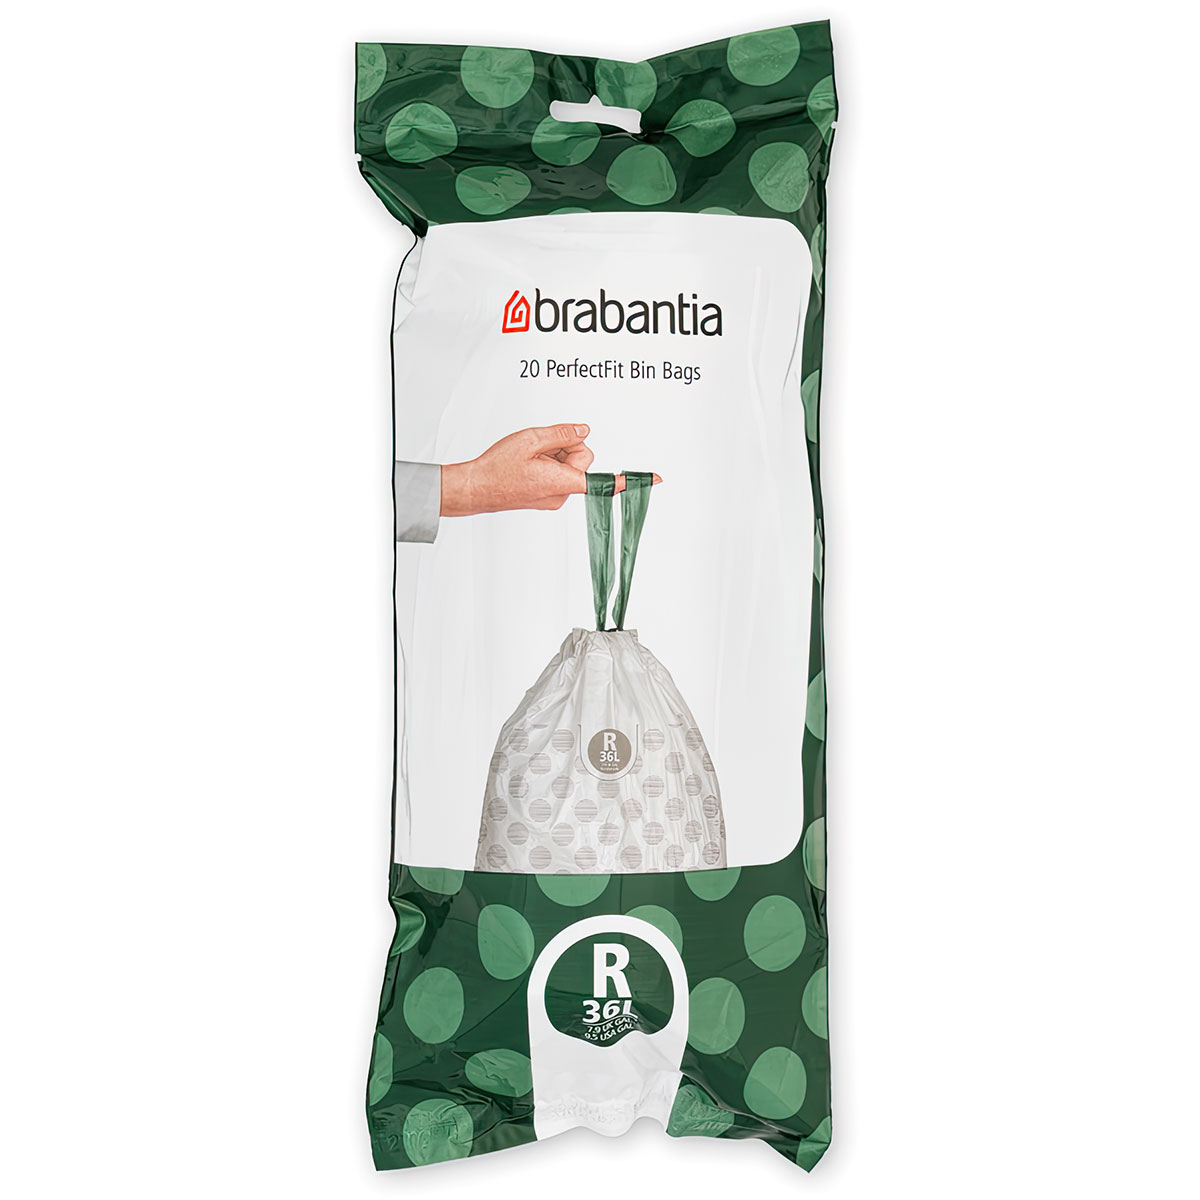 Пакет пластиковый Brabantia PerfectFit R 36л 20шт чехлы для одежды brabantia размер l 2шт